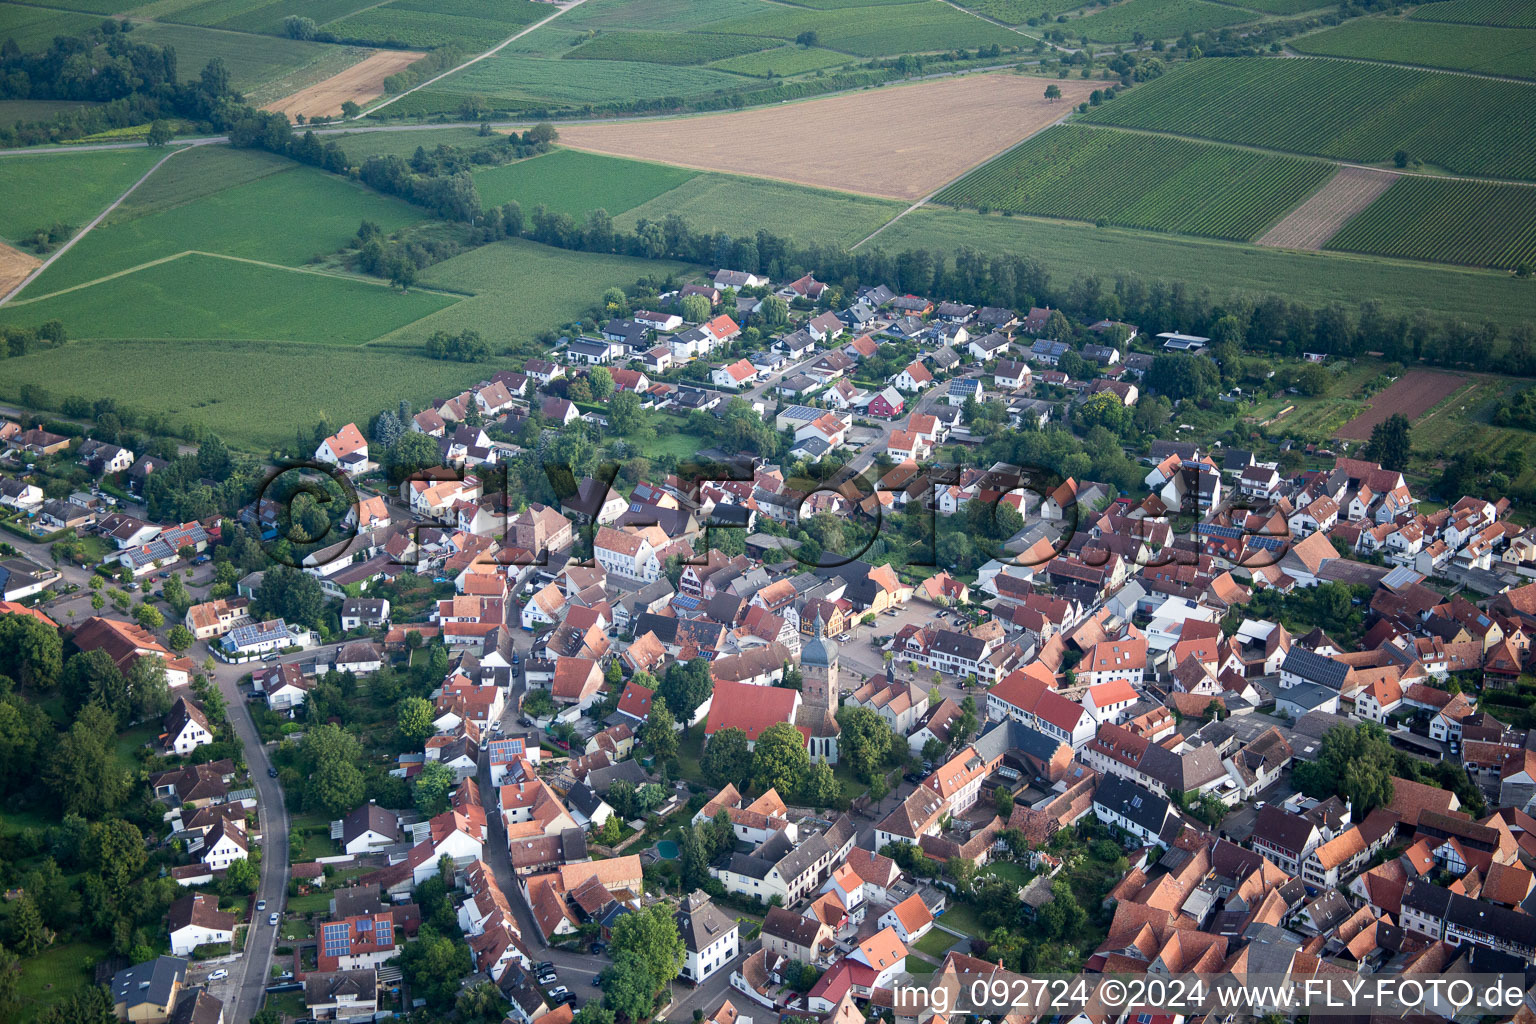 Vue aérienne de Bâtiment d'église au centre du village à le quartier Mühlhofen in Billigheim-Ingenheim dans le département Rhénanie-Palatinat, Allemagne